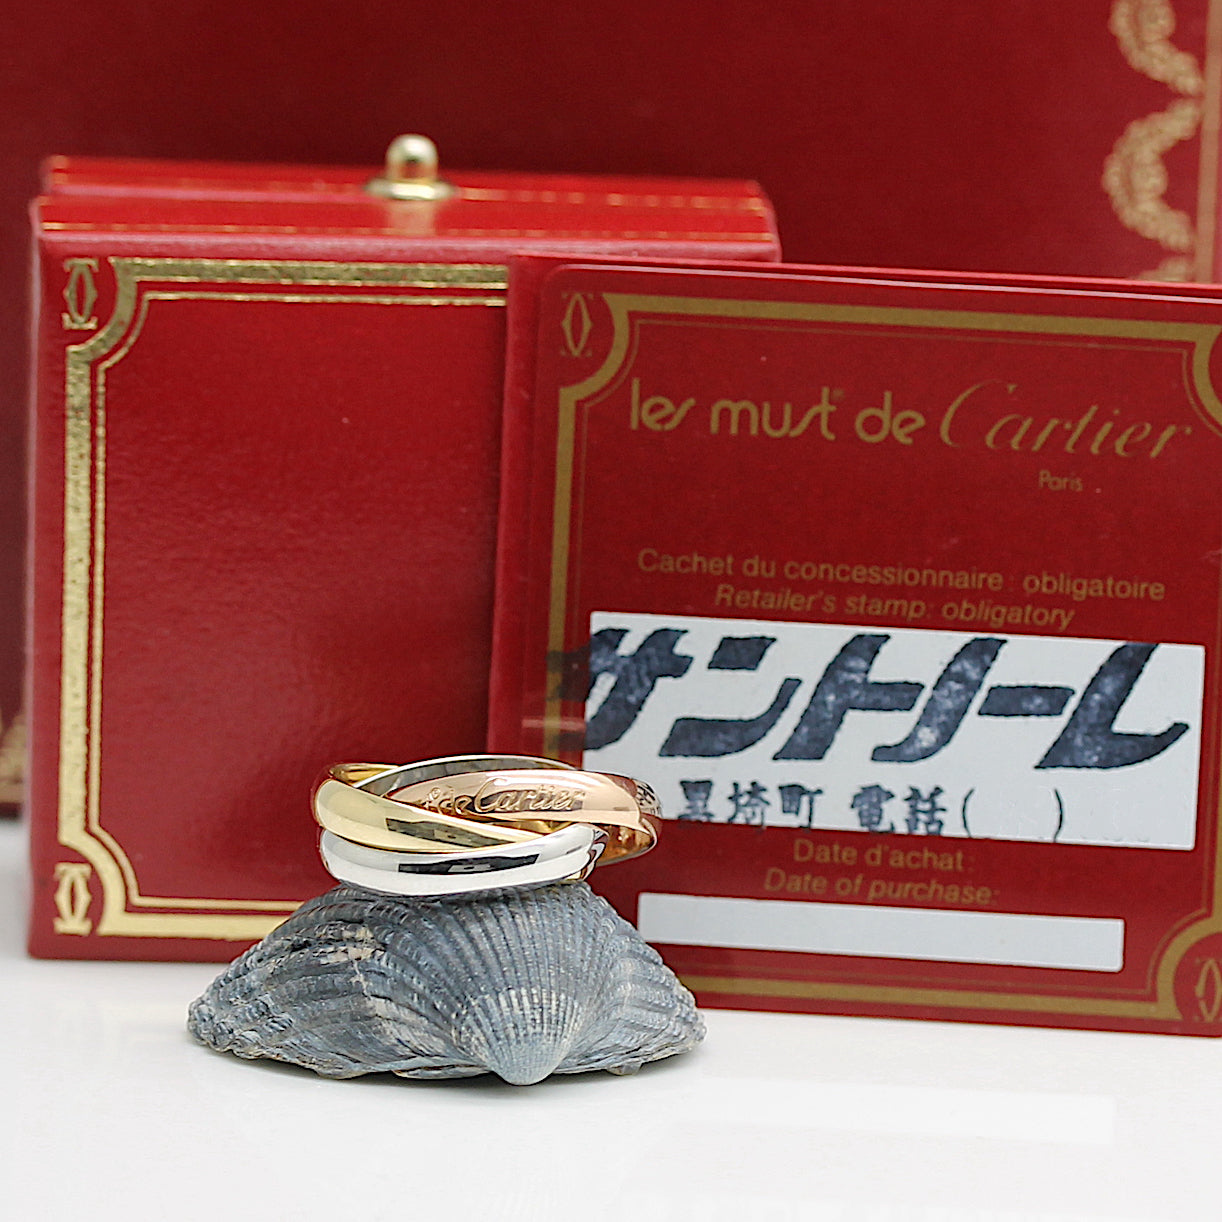 Les must de Cartier Trinity Tricolour 18KT Gold mit Cartier Box & Papiere in Gr. 50